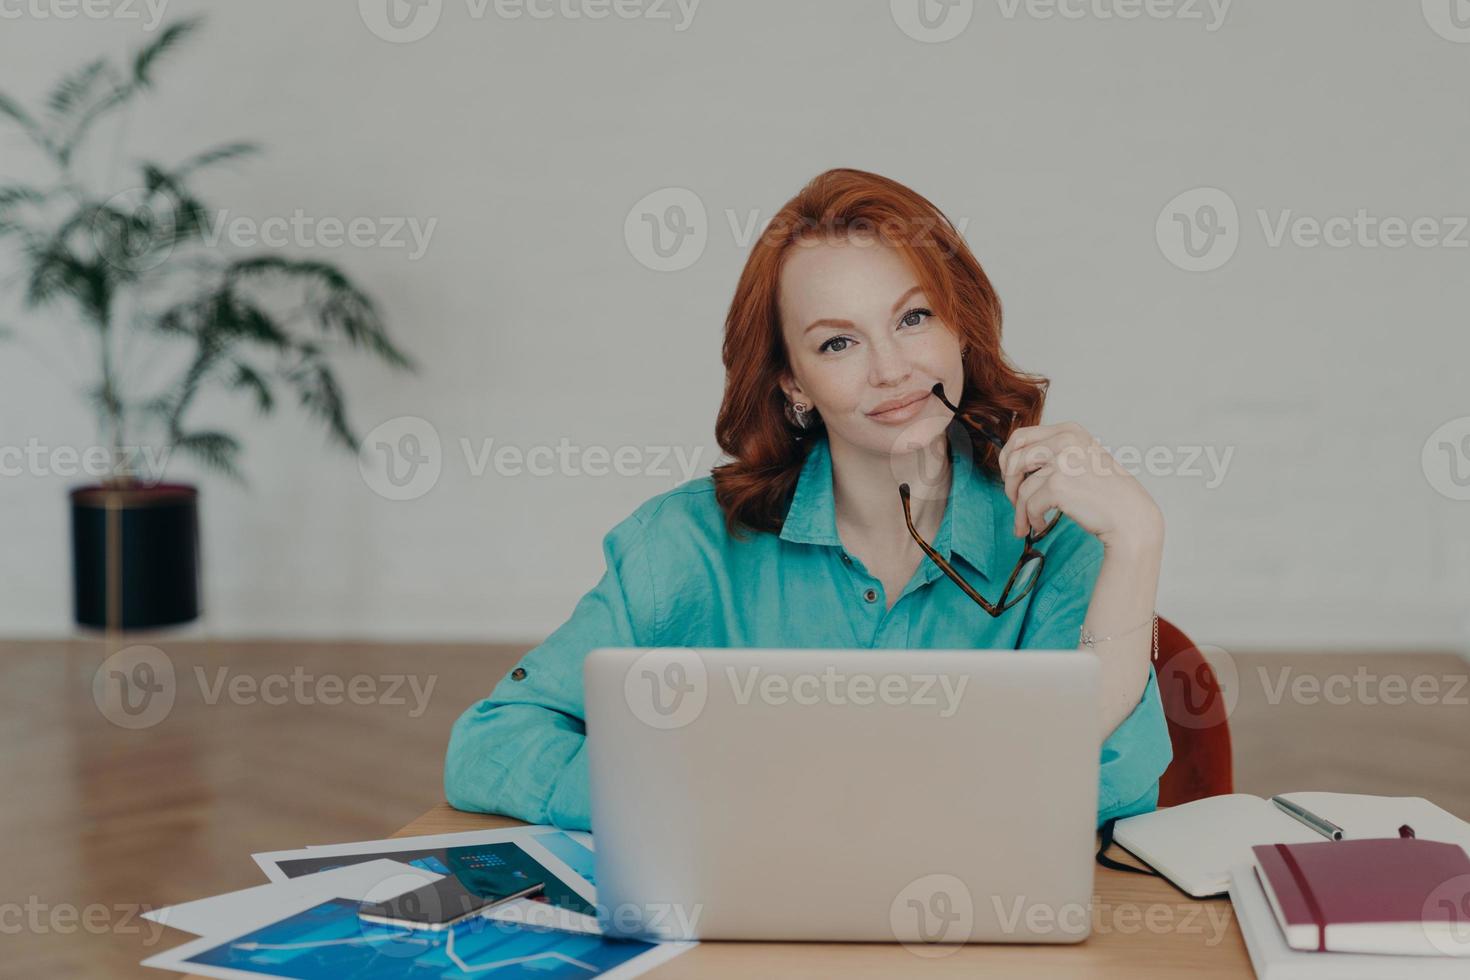 linda mulher ruiva trabalha distante de casa, senta-se na frente do laptop termina de trabalhar no projeto pensa em adicionar conteúdo interessante no próprio site prepara publicação para página da web foto